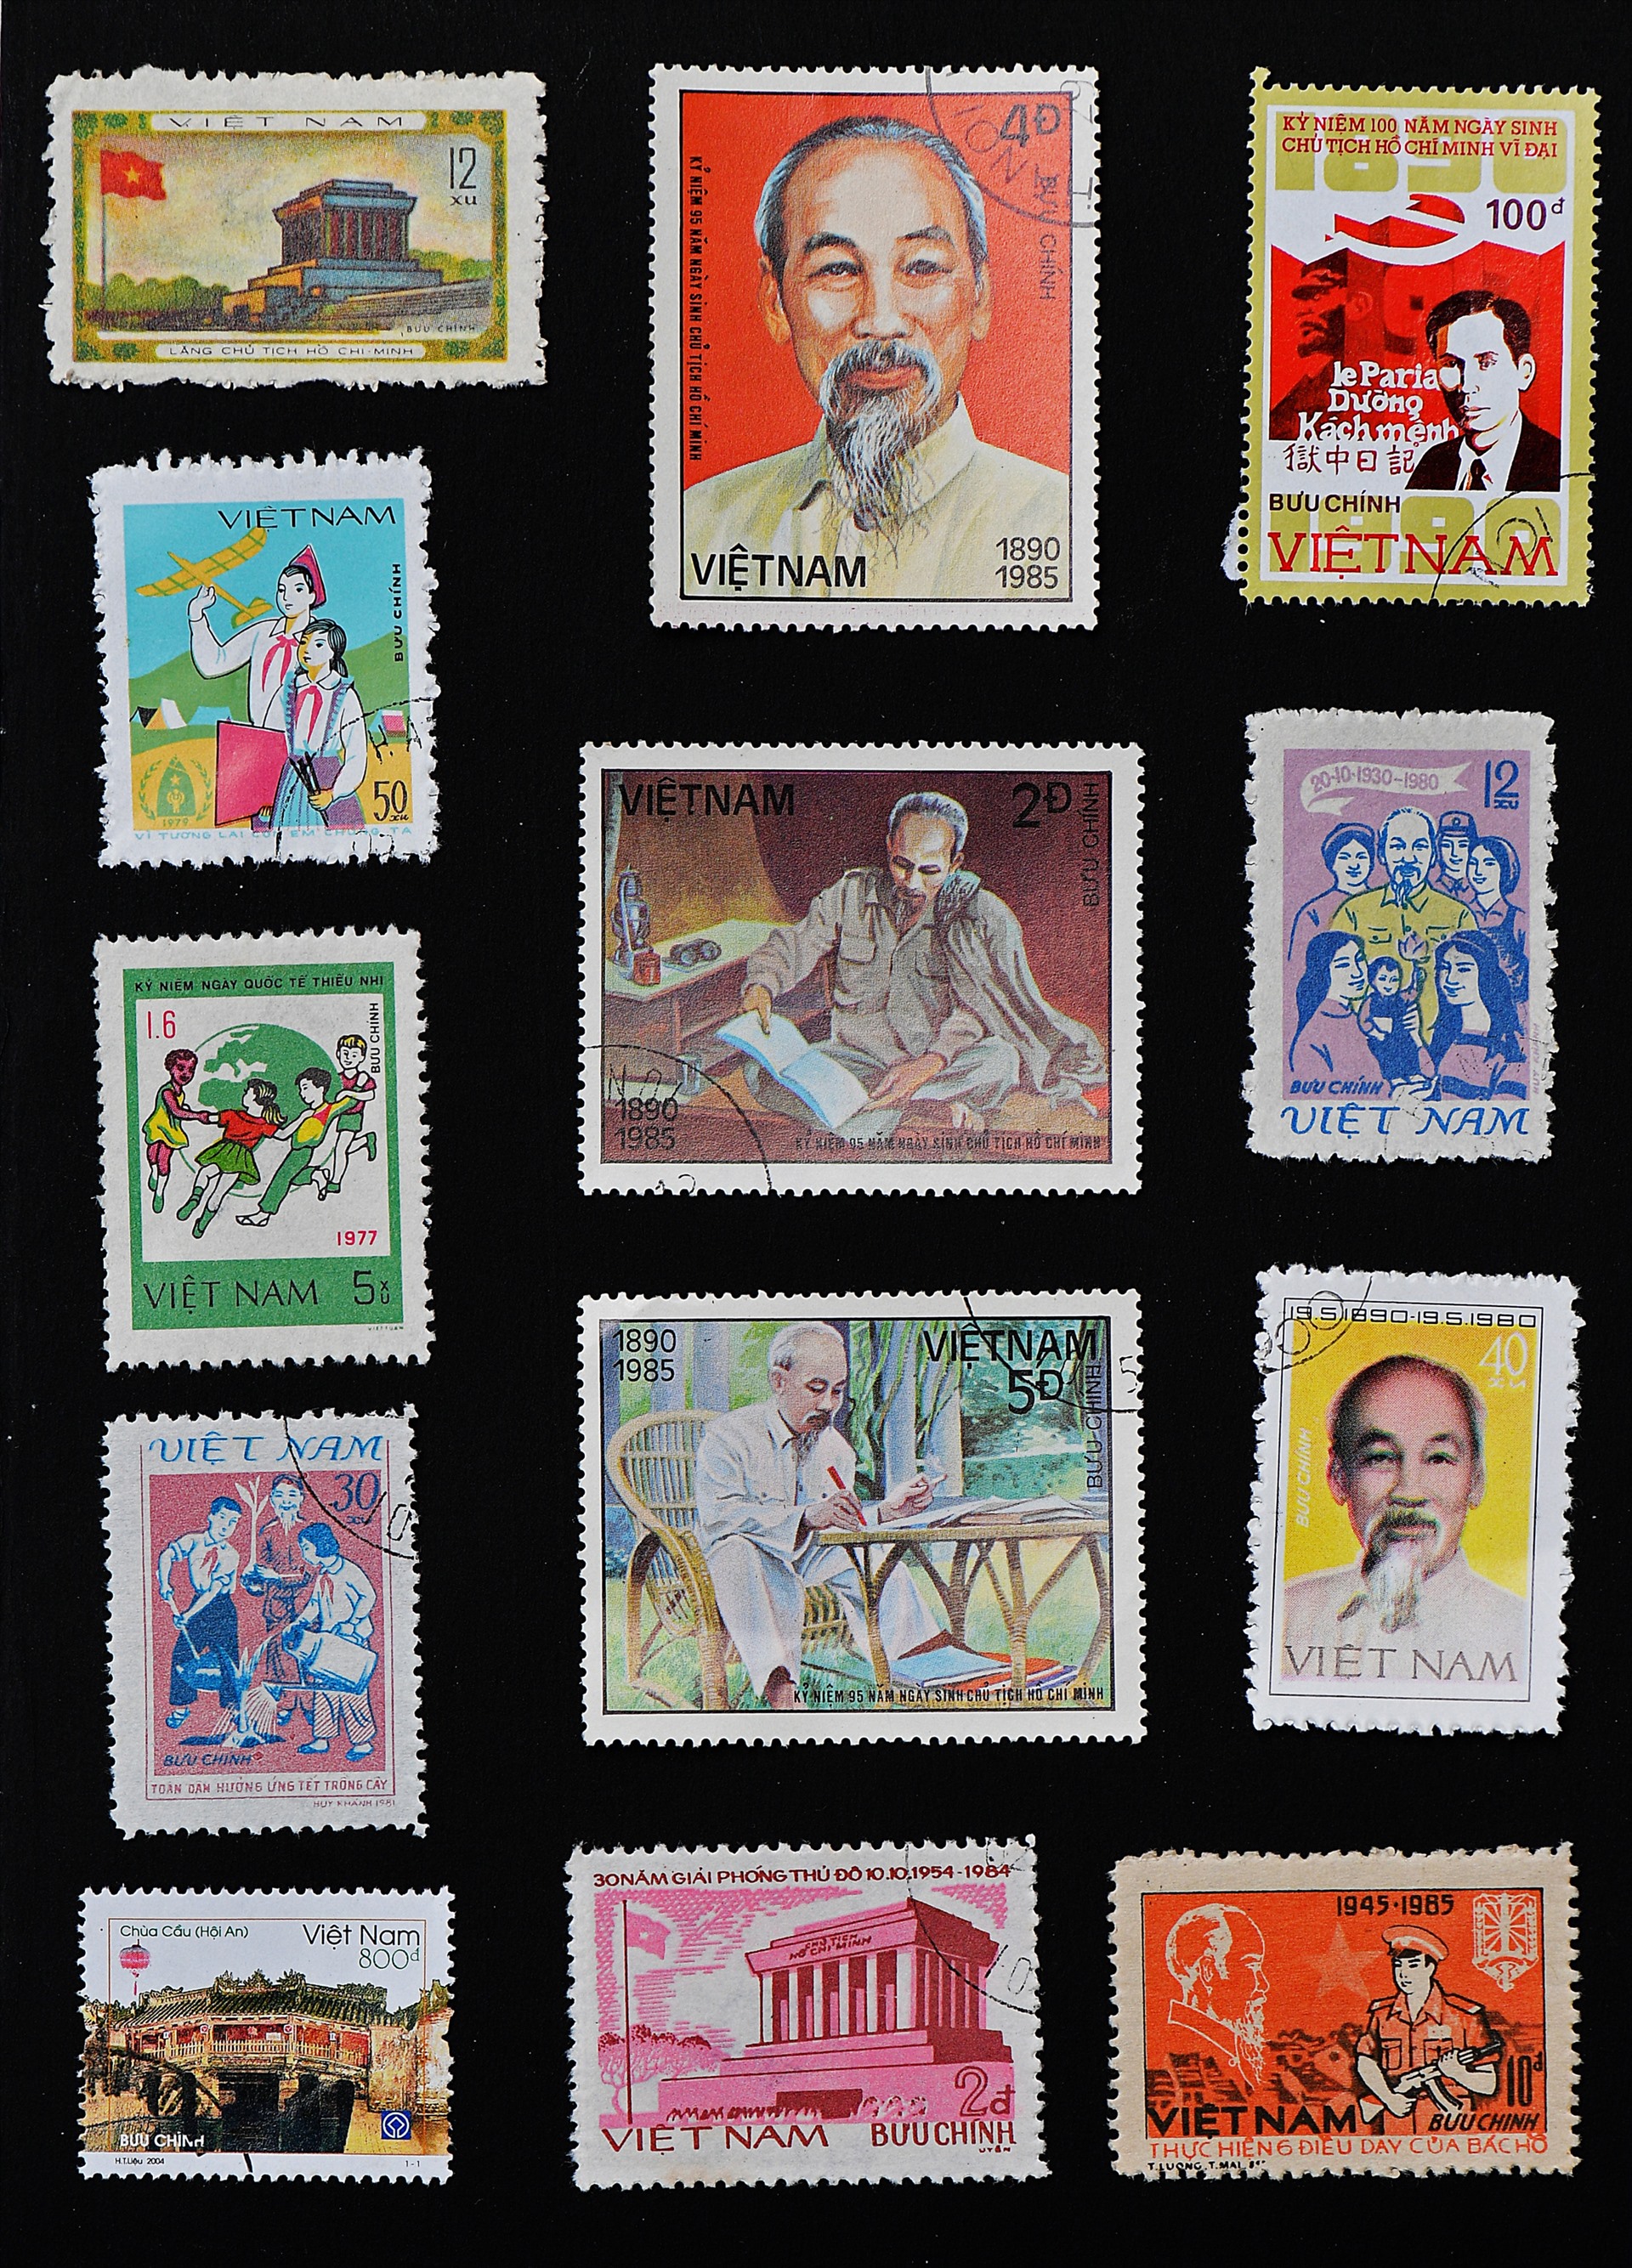 Hình ảnh Hồ Chí Minh xuất hiện trong nhiều bộ tem bưu chính Việt Nam.